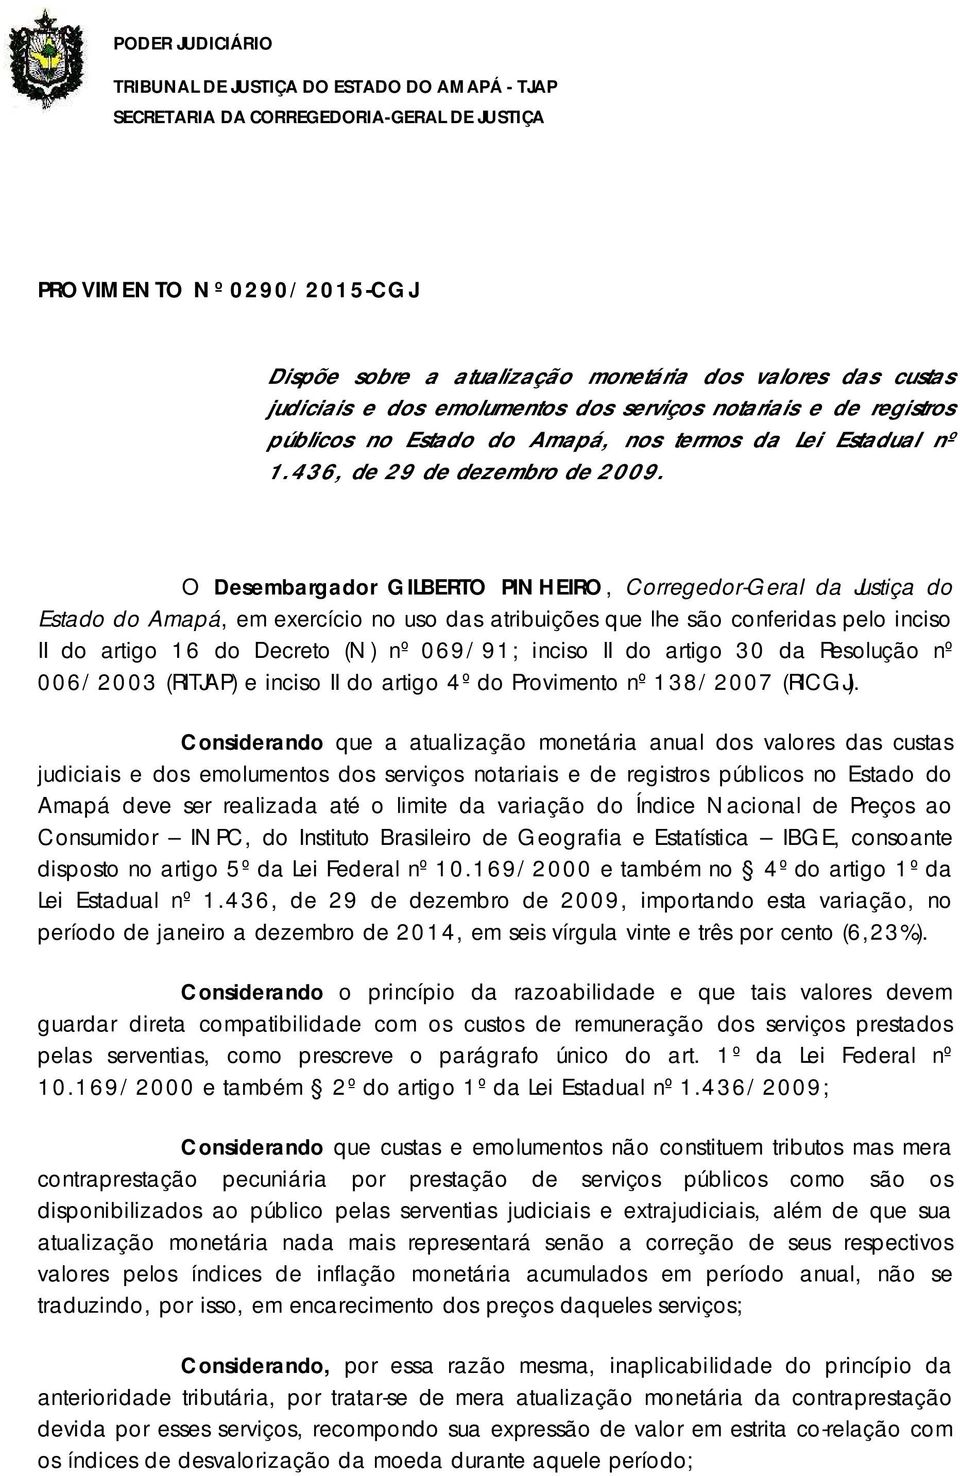 O Desembargador GILBERTO PINHEIRO, Corregedor-Geral da Justiça do Estado do Amapá, em exercício no uso das atribuições que lhe são conferidas pelo inciso II do artigo 6 do Decreto (N) nº 069/9;